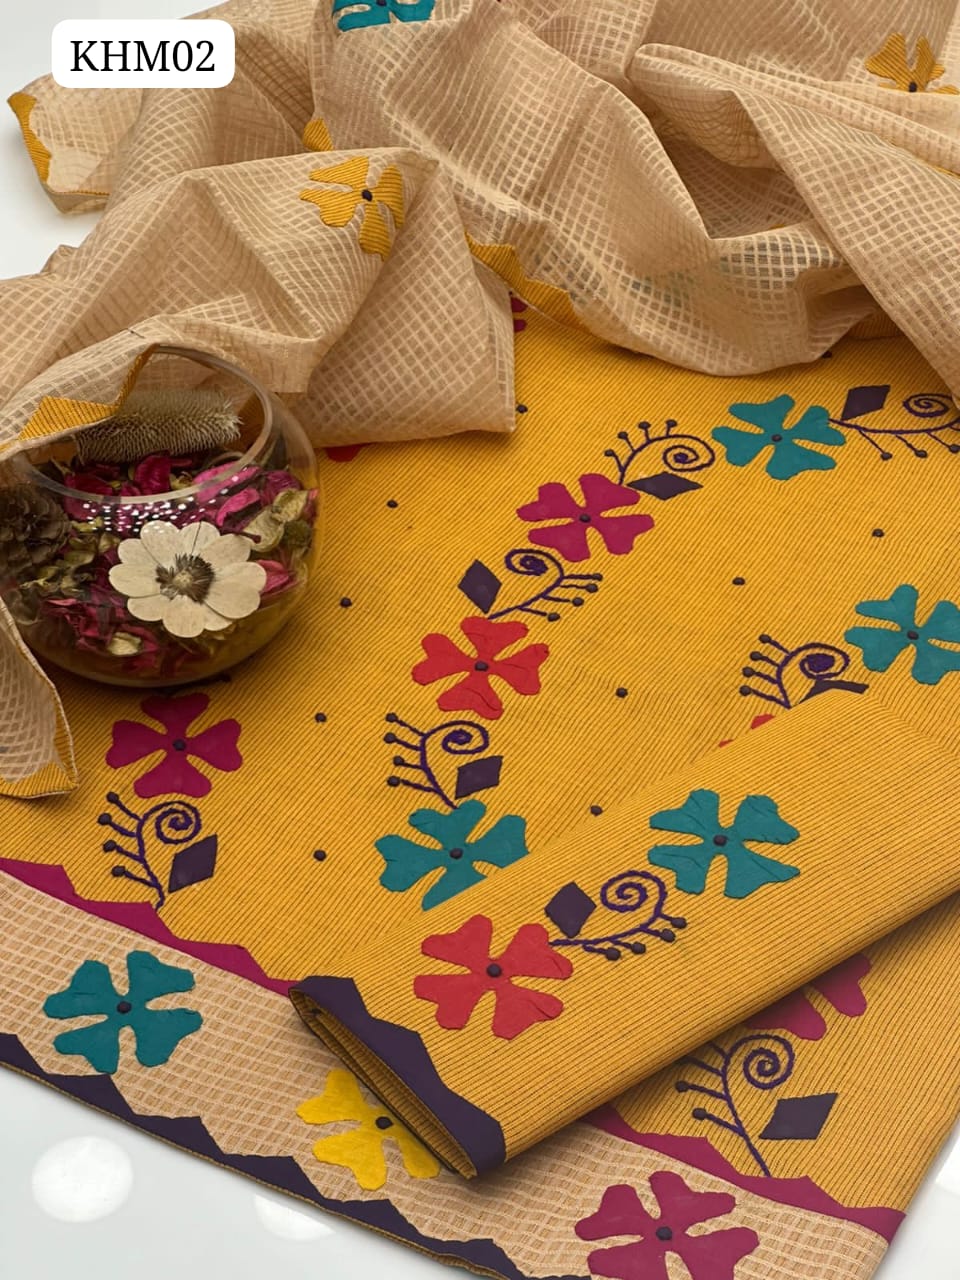 ﻿Khaadi Cotton Khaddar Handmade Applick Work Shirt And Trouser Along With Khaddi Net Applick Work Dupatta 3 Pcs Dress